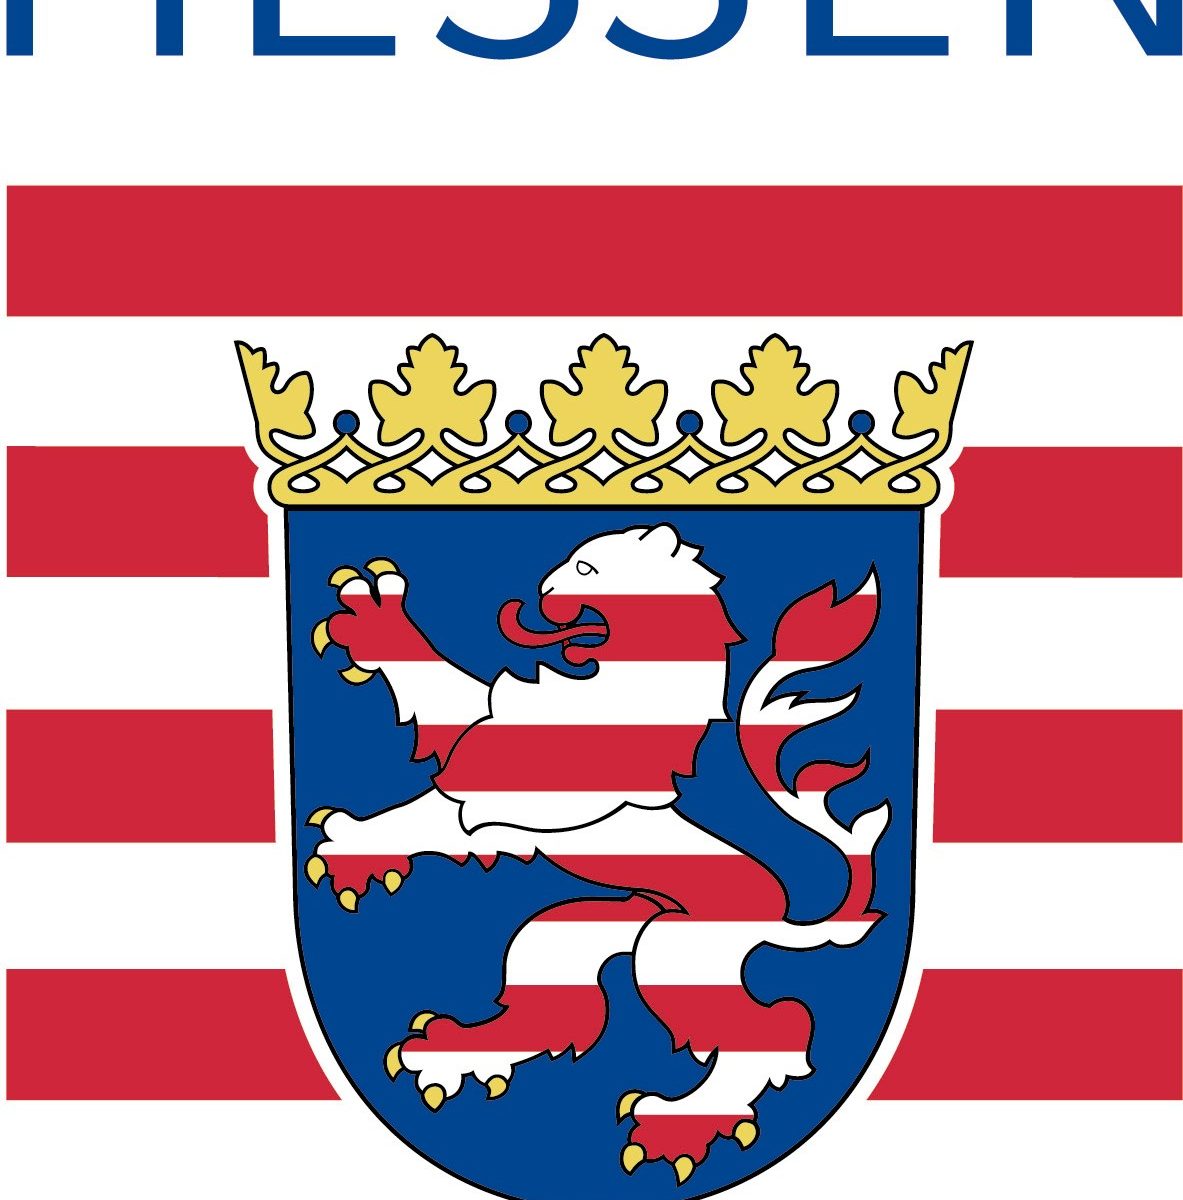 Wappen des Landes Hessen. Das Bild dient als Navigationselement und führt zum vollständigen Artikel.